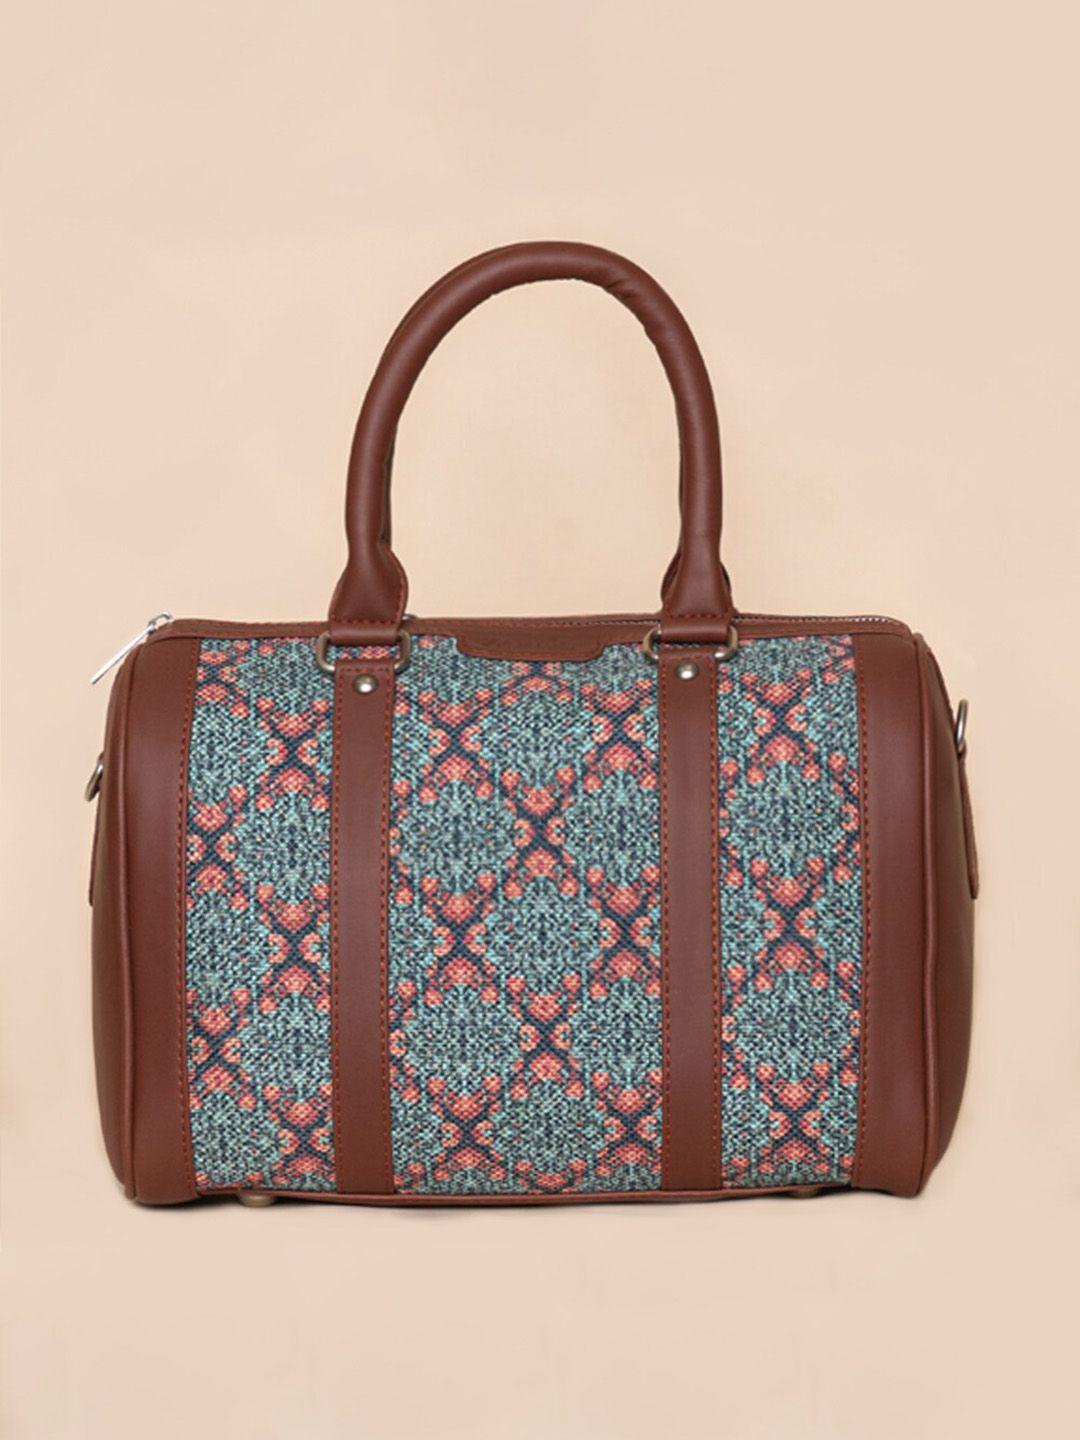 zouk teal & pink ethnic motifs printed structured handheld bag